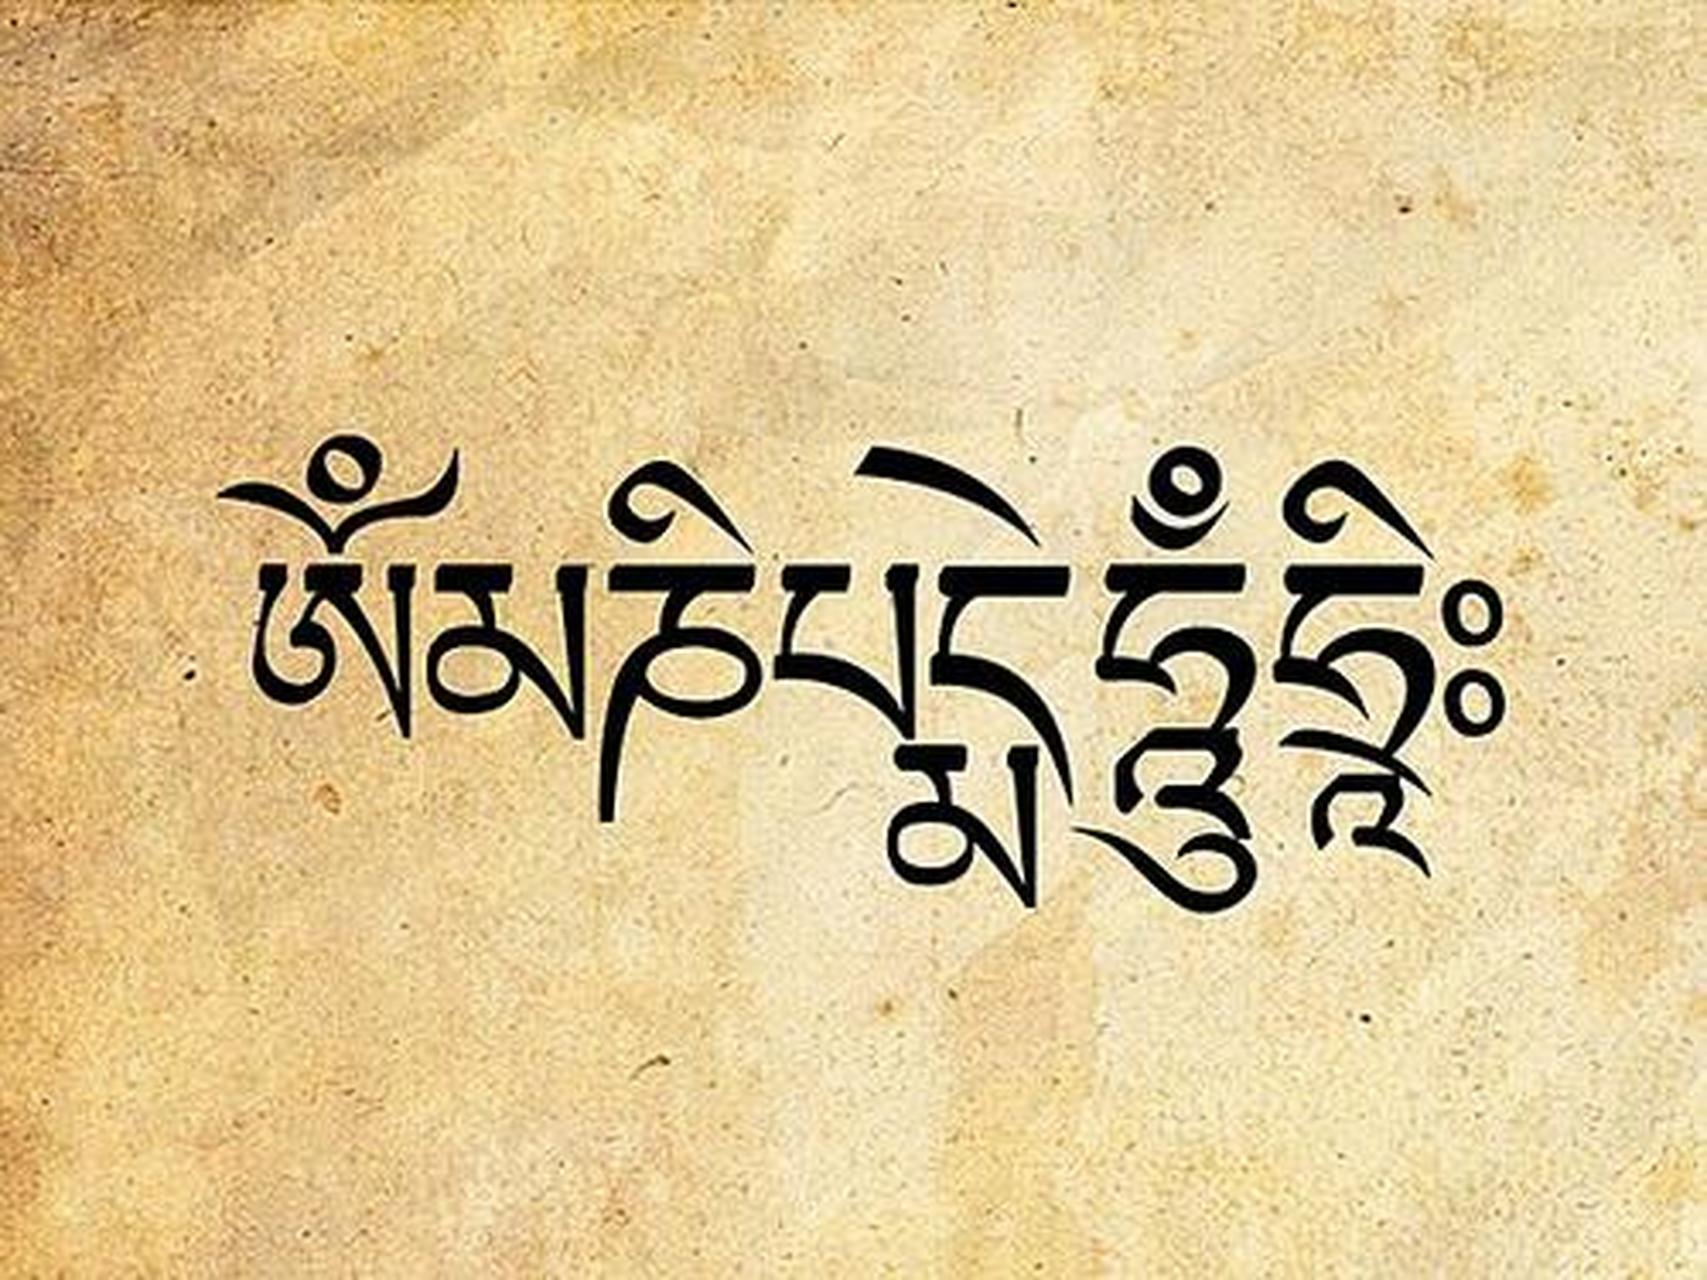 六字箴言为藏传佛教名词,据说是佛教秘密莲花部之根本箴言